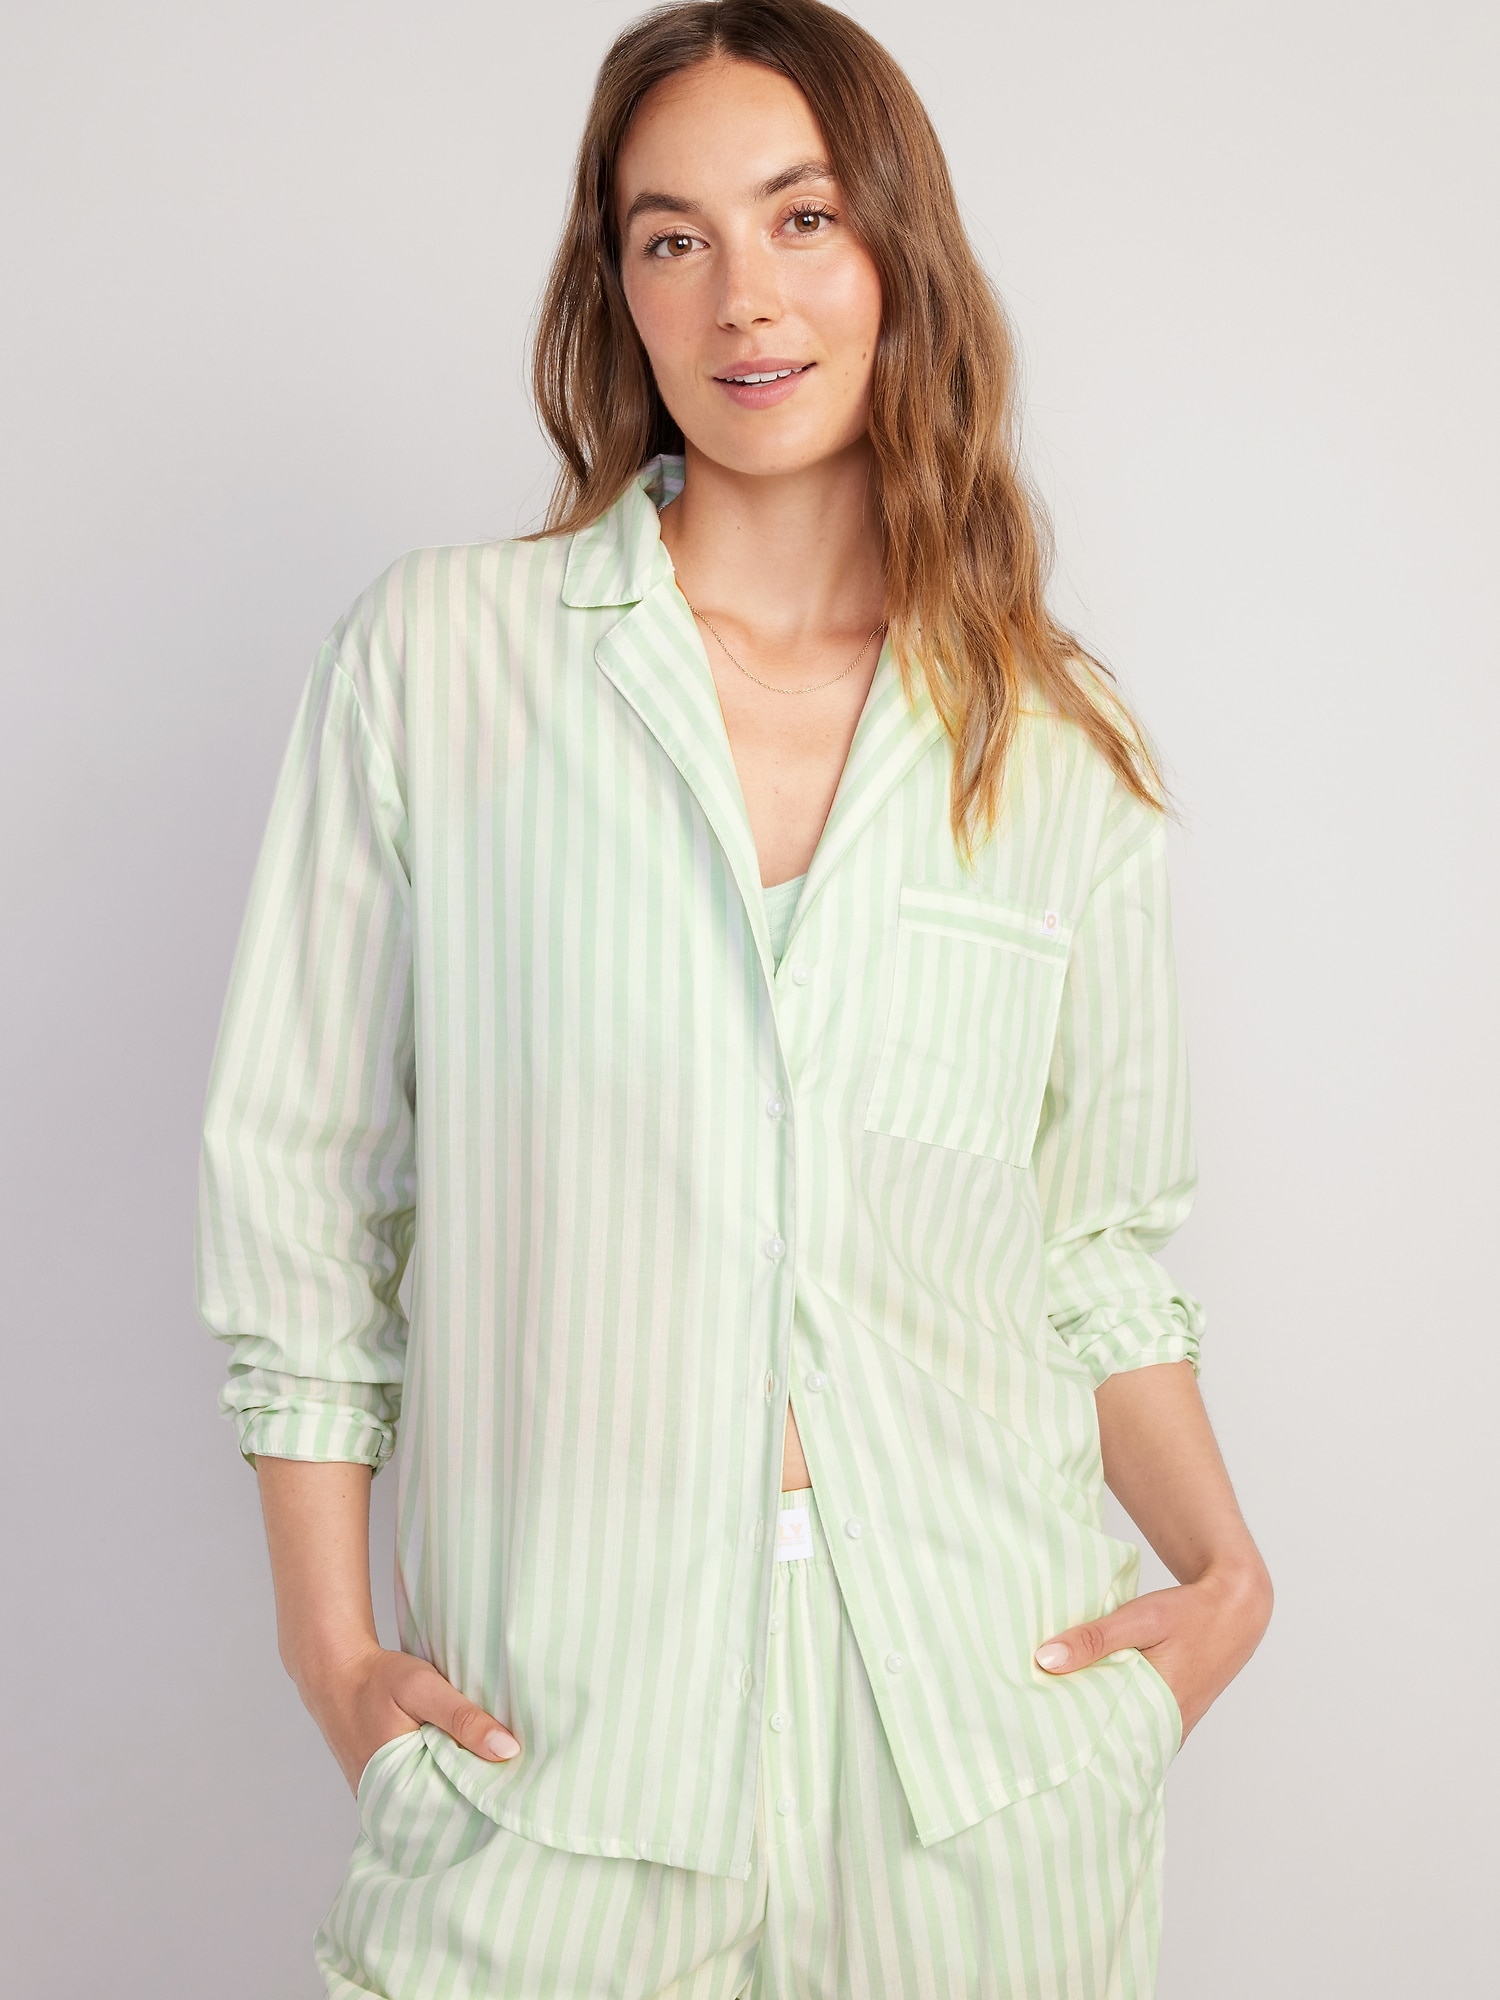 Soft Comfy Pajamas, Women's Cotton Pajamas, Cardigan Lapel